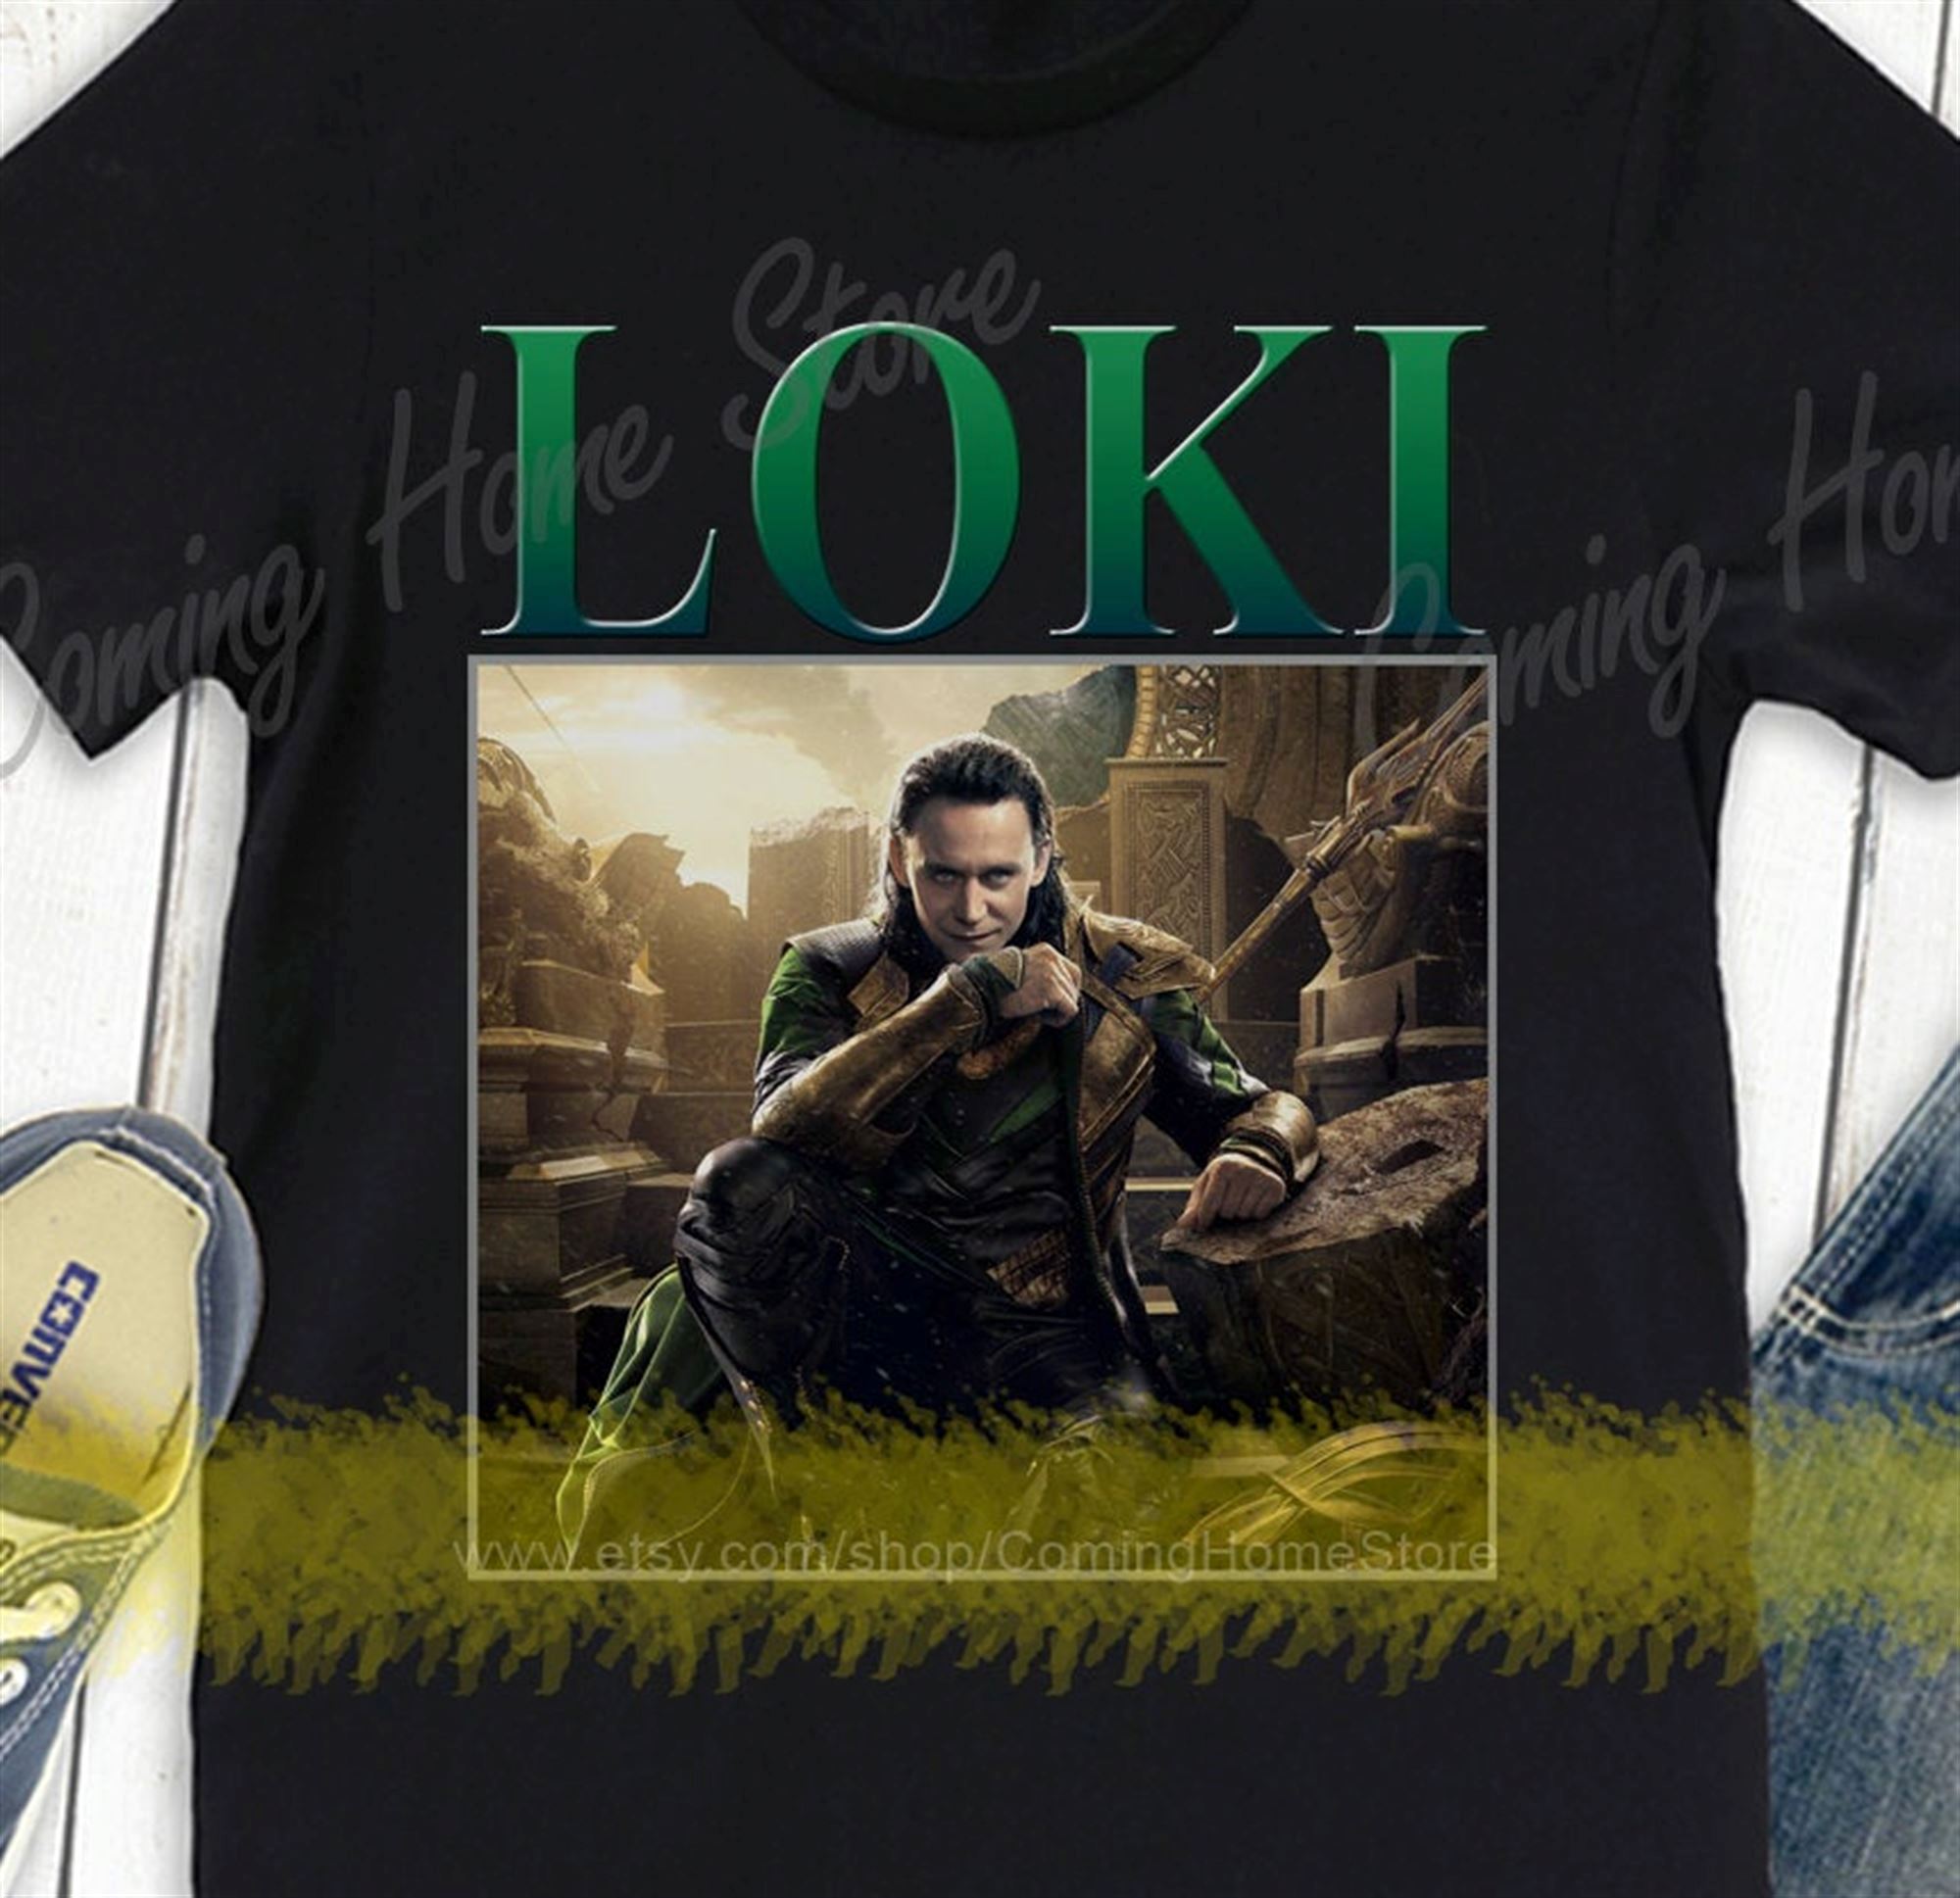 Limited Editon Loki Shirt Loki Laufeyson Shirt Homage Retro T-shirt Unisex Women And Youth Size Shirt Cotton 